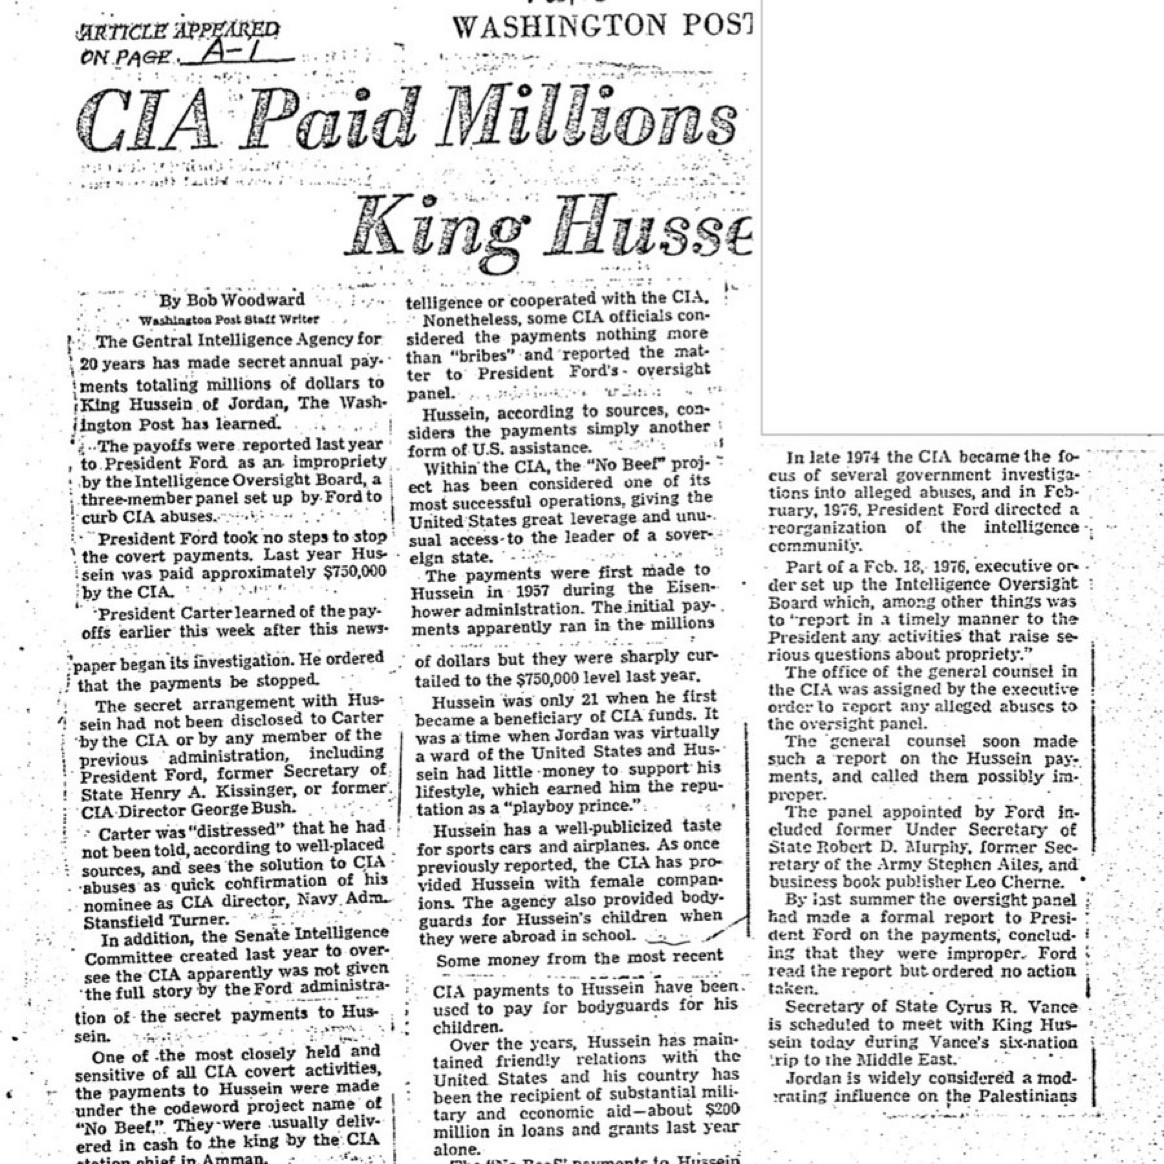 الملك حسين تلقى راتبًا من وكالة المخابرات المركزية الاميركية  ‏بوب وودورد من صحيفة واشنطن بوست في 17